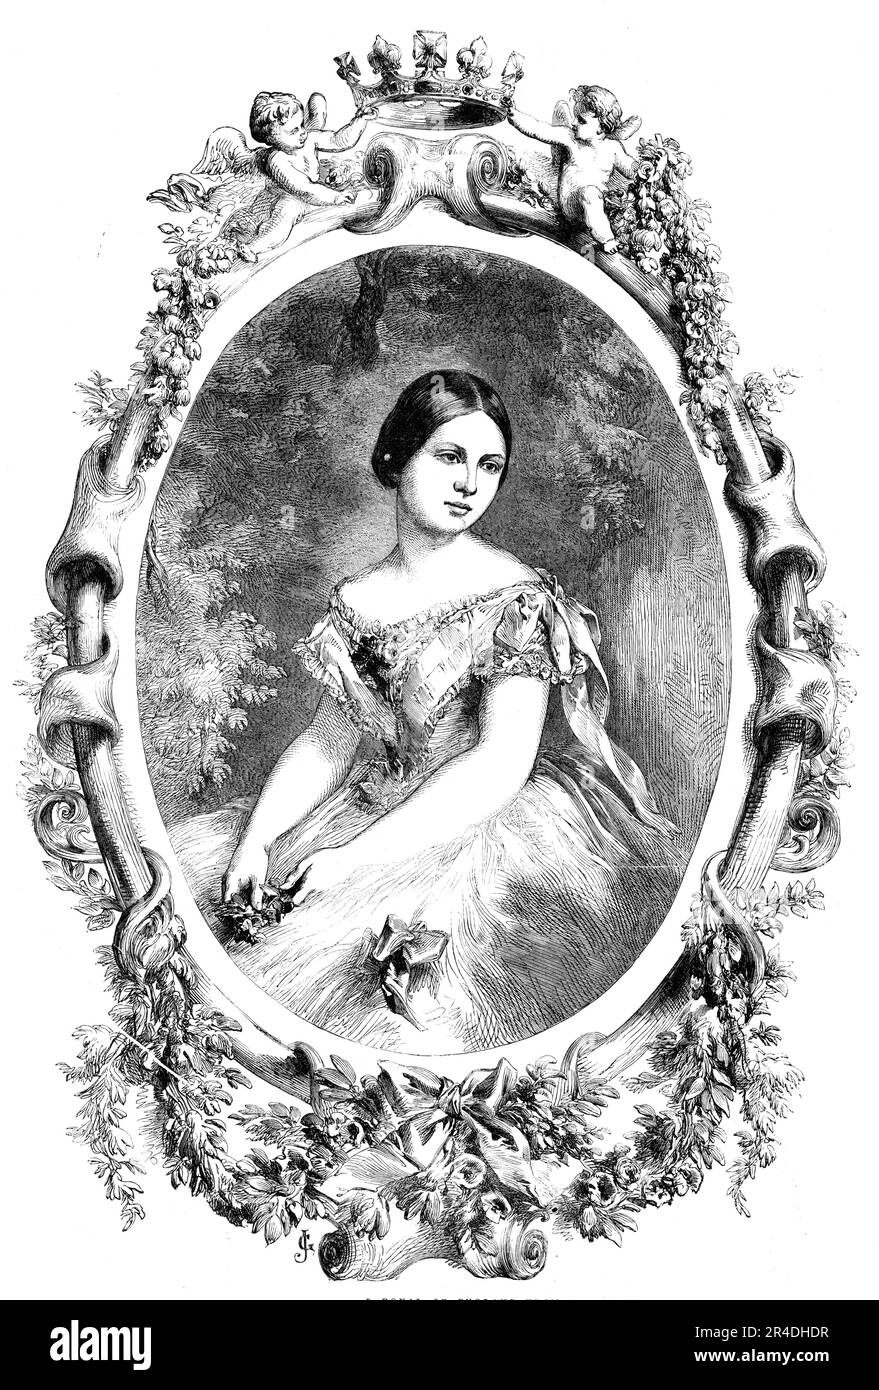 Ihre königliche Hoheit Prinzessin Royal von England - auf einem Foto von Mayall, 1856. Porträt von Victoria, Prinzessin Royal, Tochter von Königin Victoria. Sie heiratete Frederic William, Prinz von Preußen. Aus "Illustrierte London News", 1856. Stockfoto